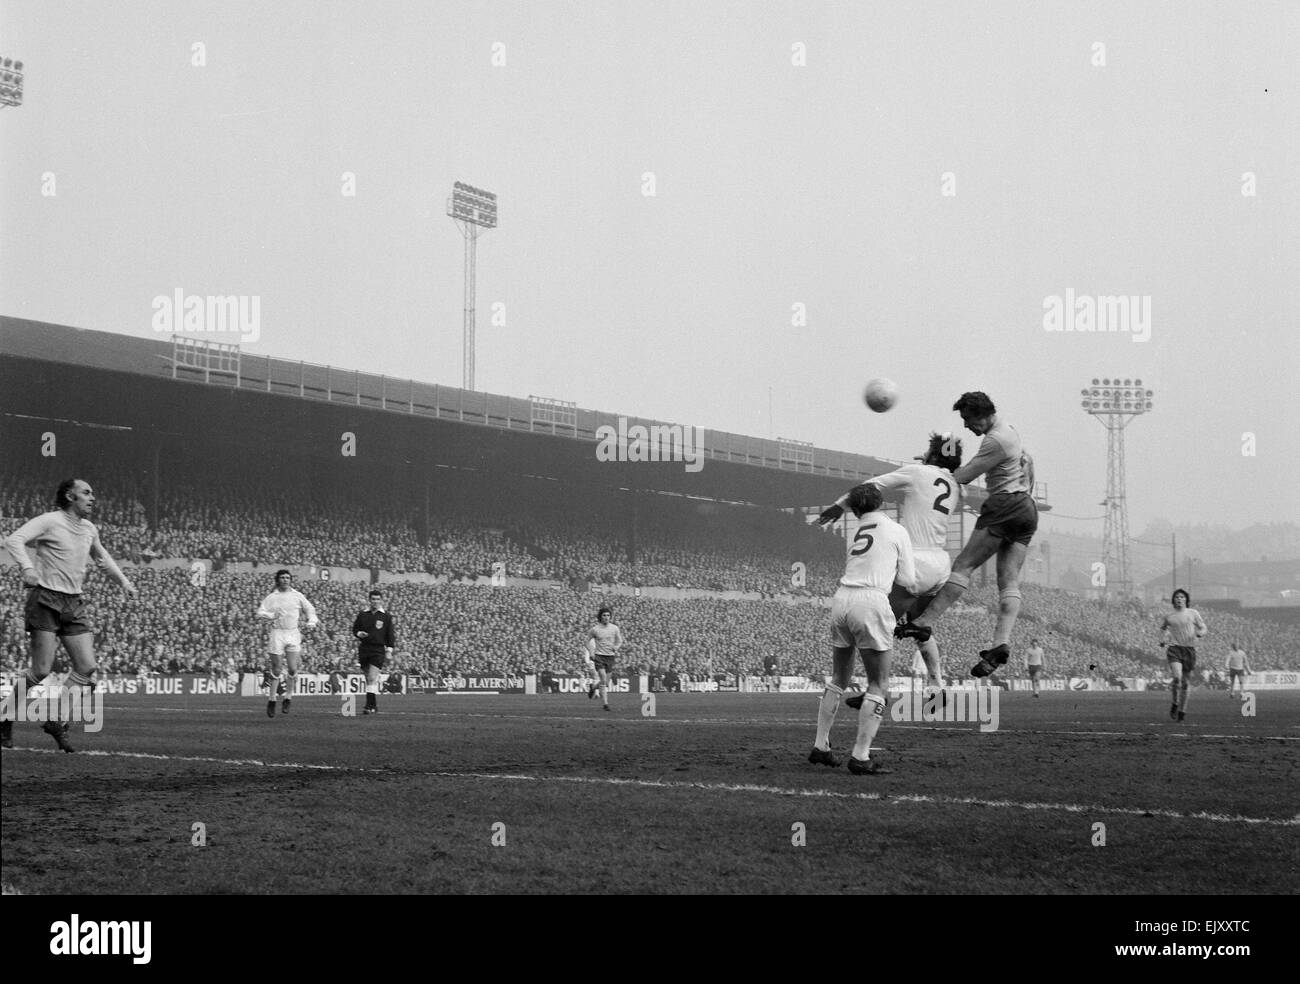 FA Cup Viertel Finale an der Elland Road. Leeds United 2 V Tottenham Hotspur 1. Sporen vorwärts Martin Chivers Sprünge für einen hohen Ball mit Leeds Verteidiger. 18. März 1972. Stockfoto